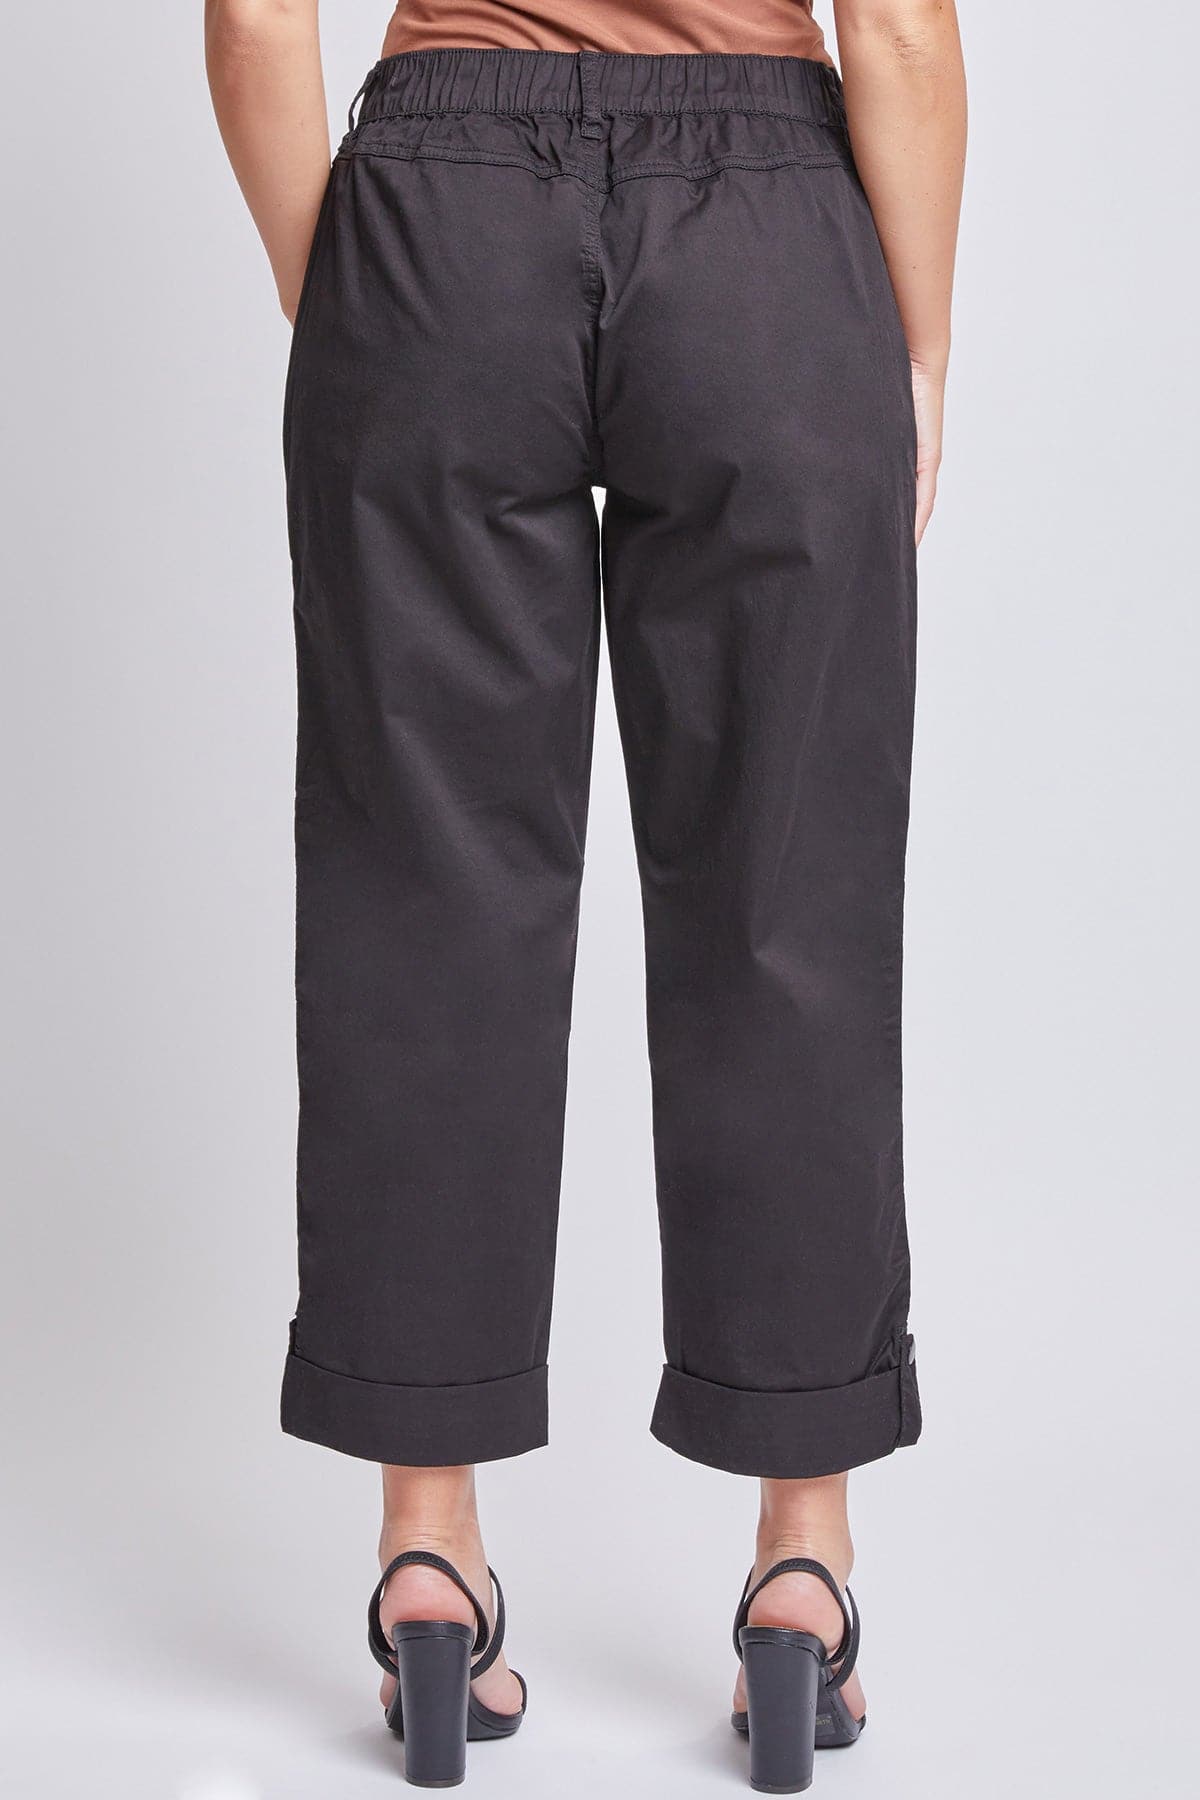 Women's Wide Cargo Pants with Roll Tab Hem